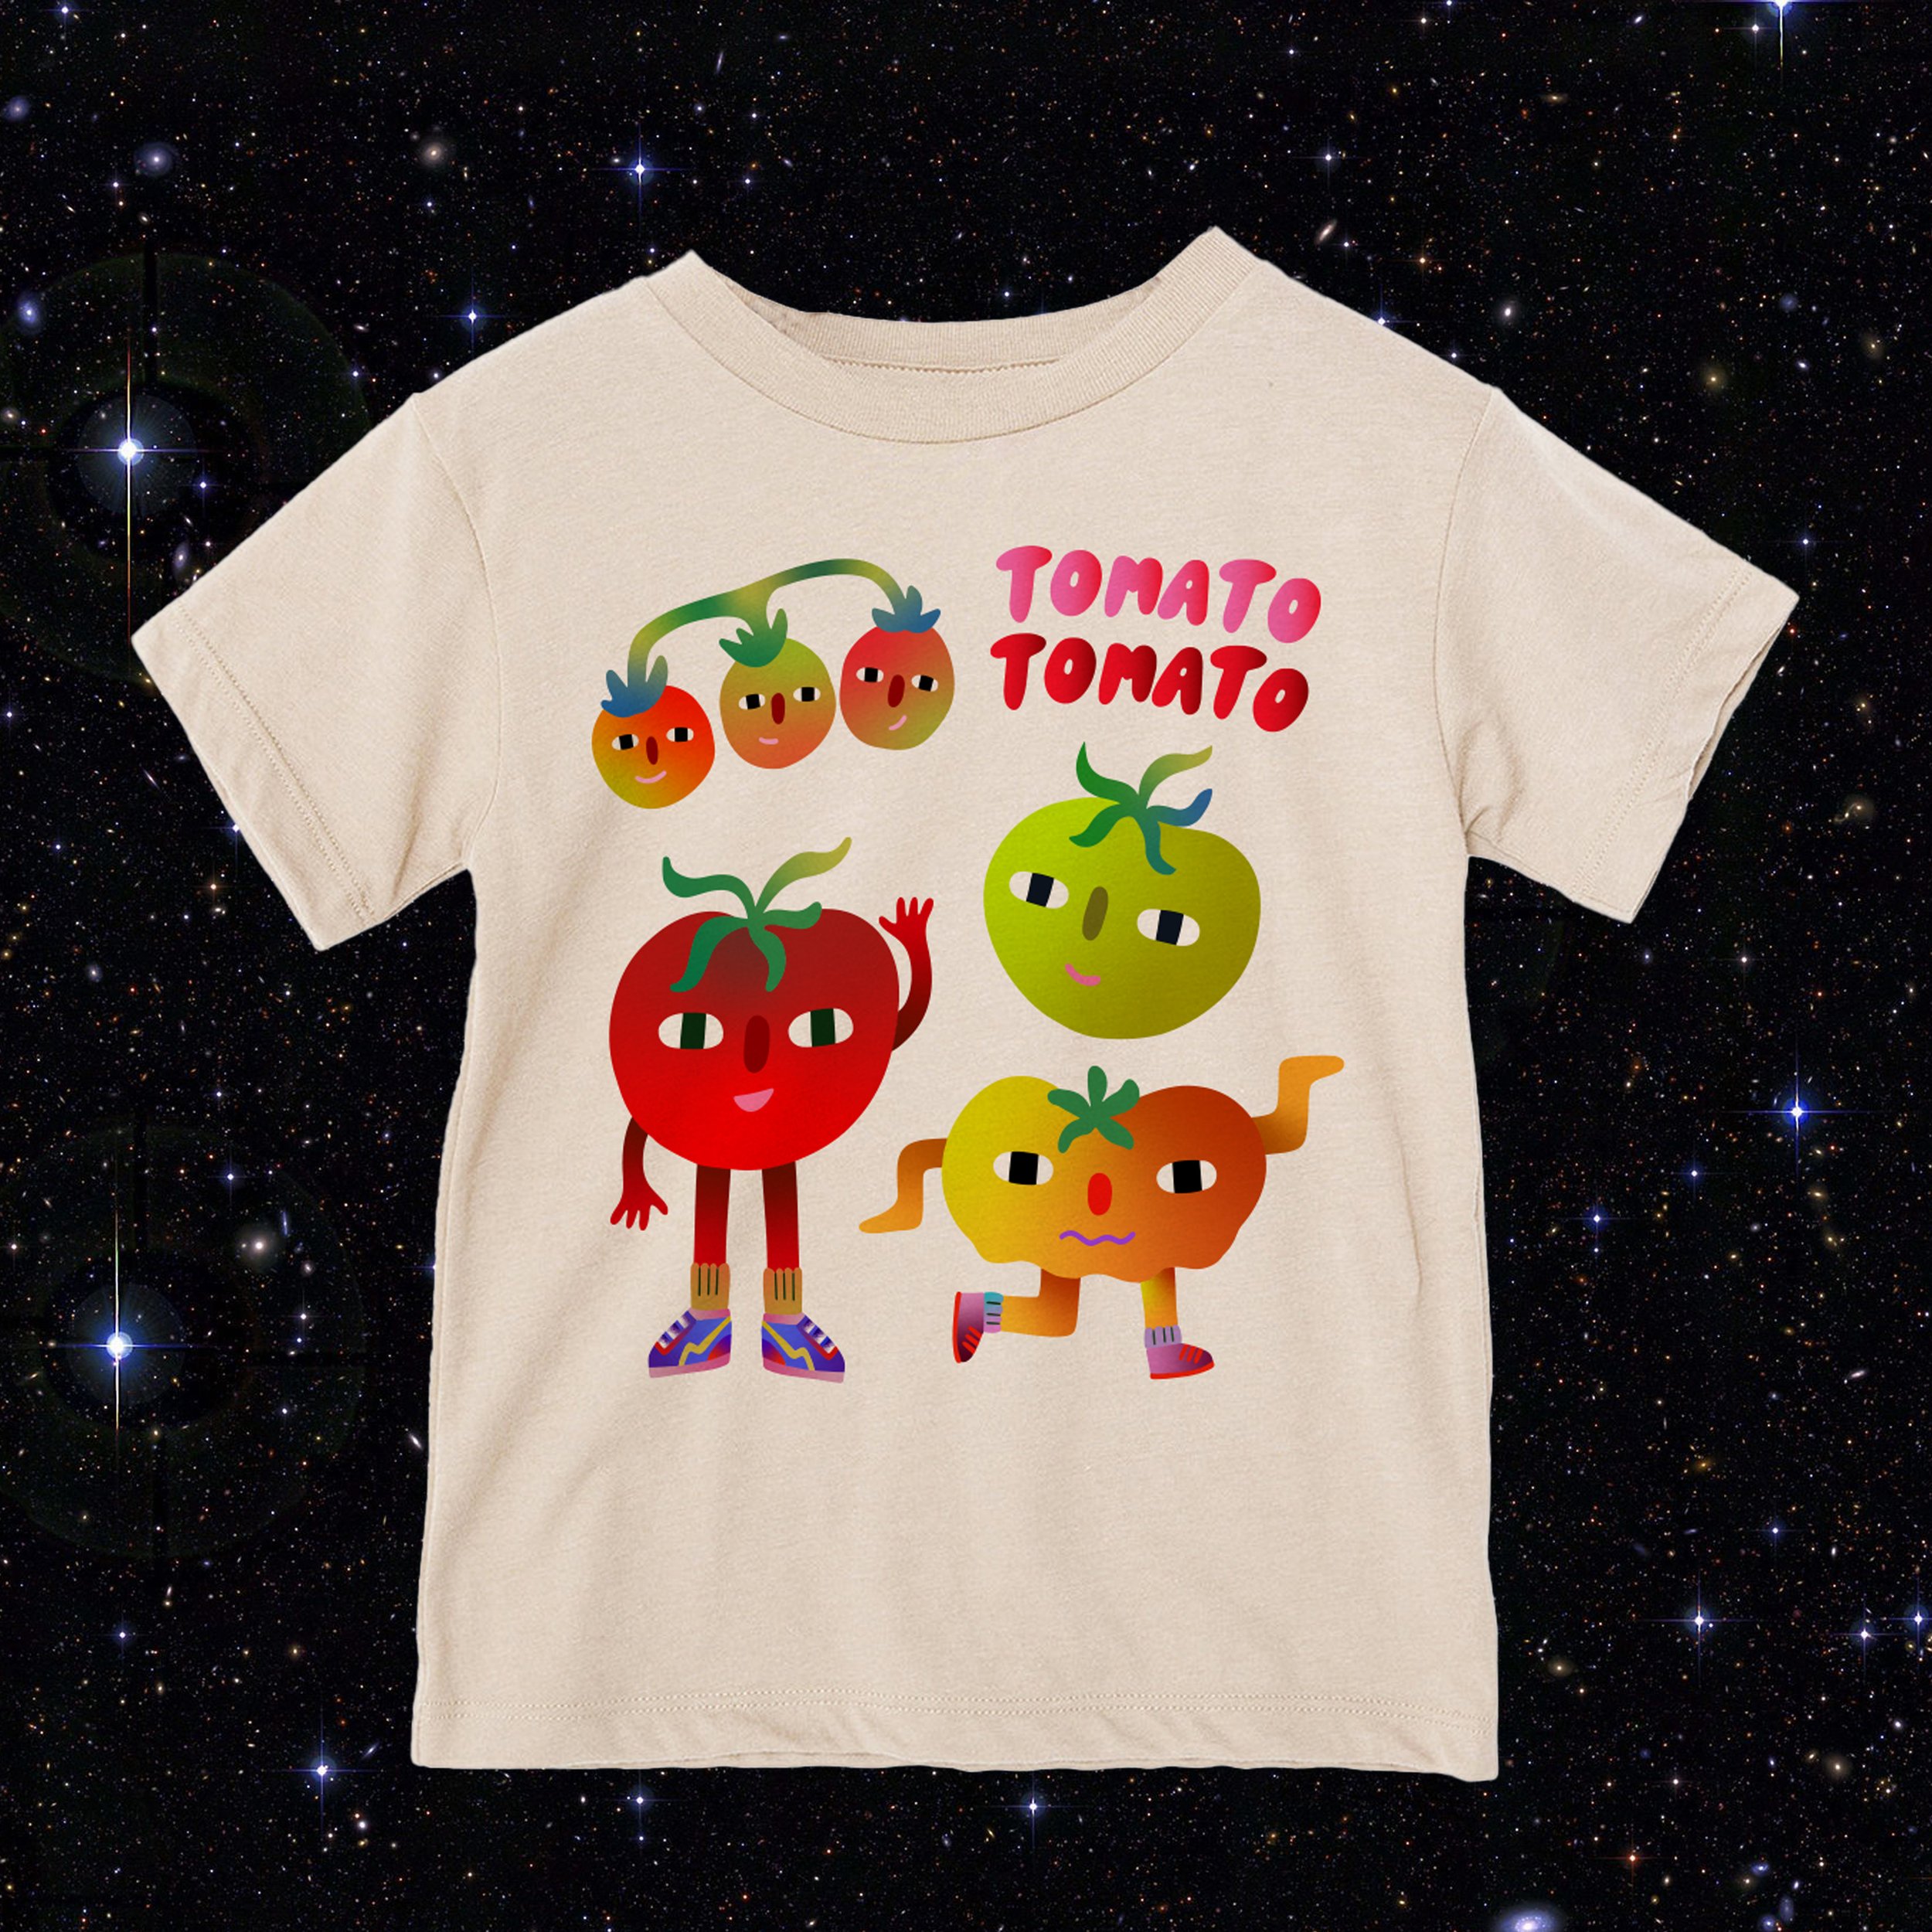 tomatoe-tee.jpg